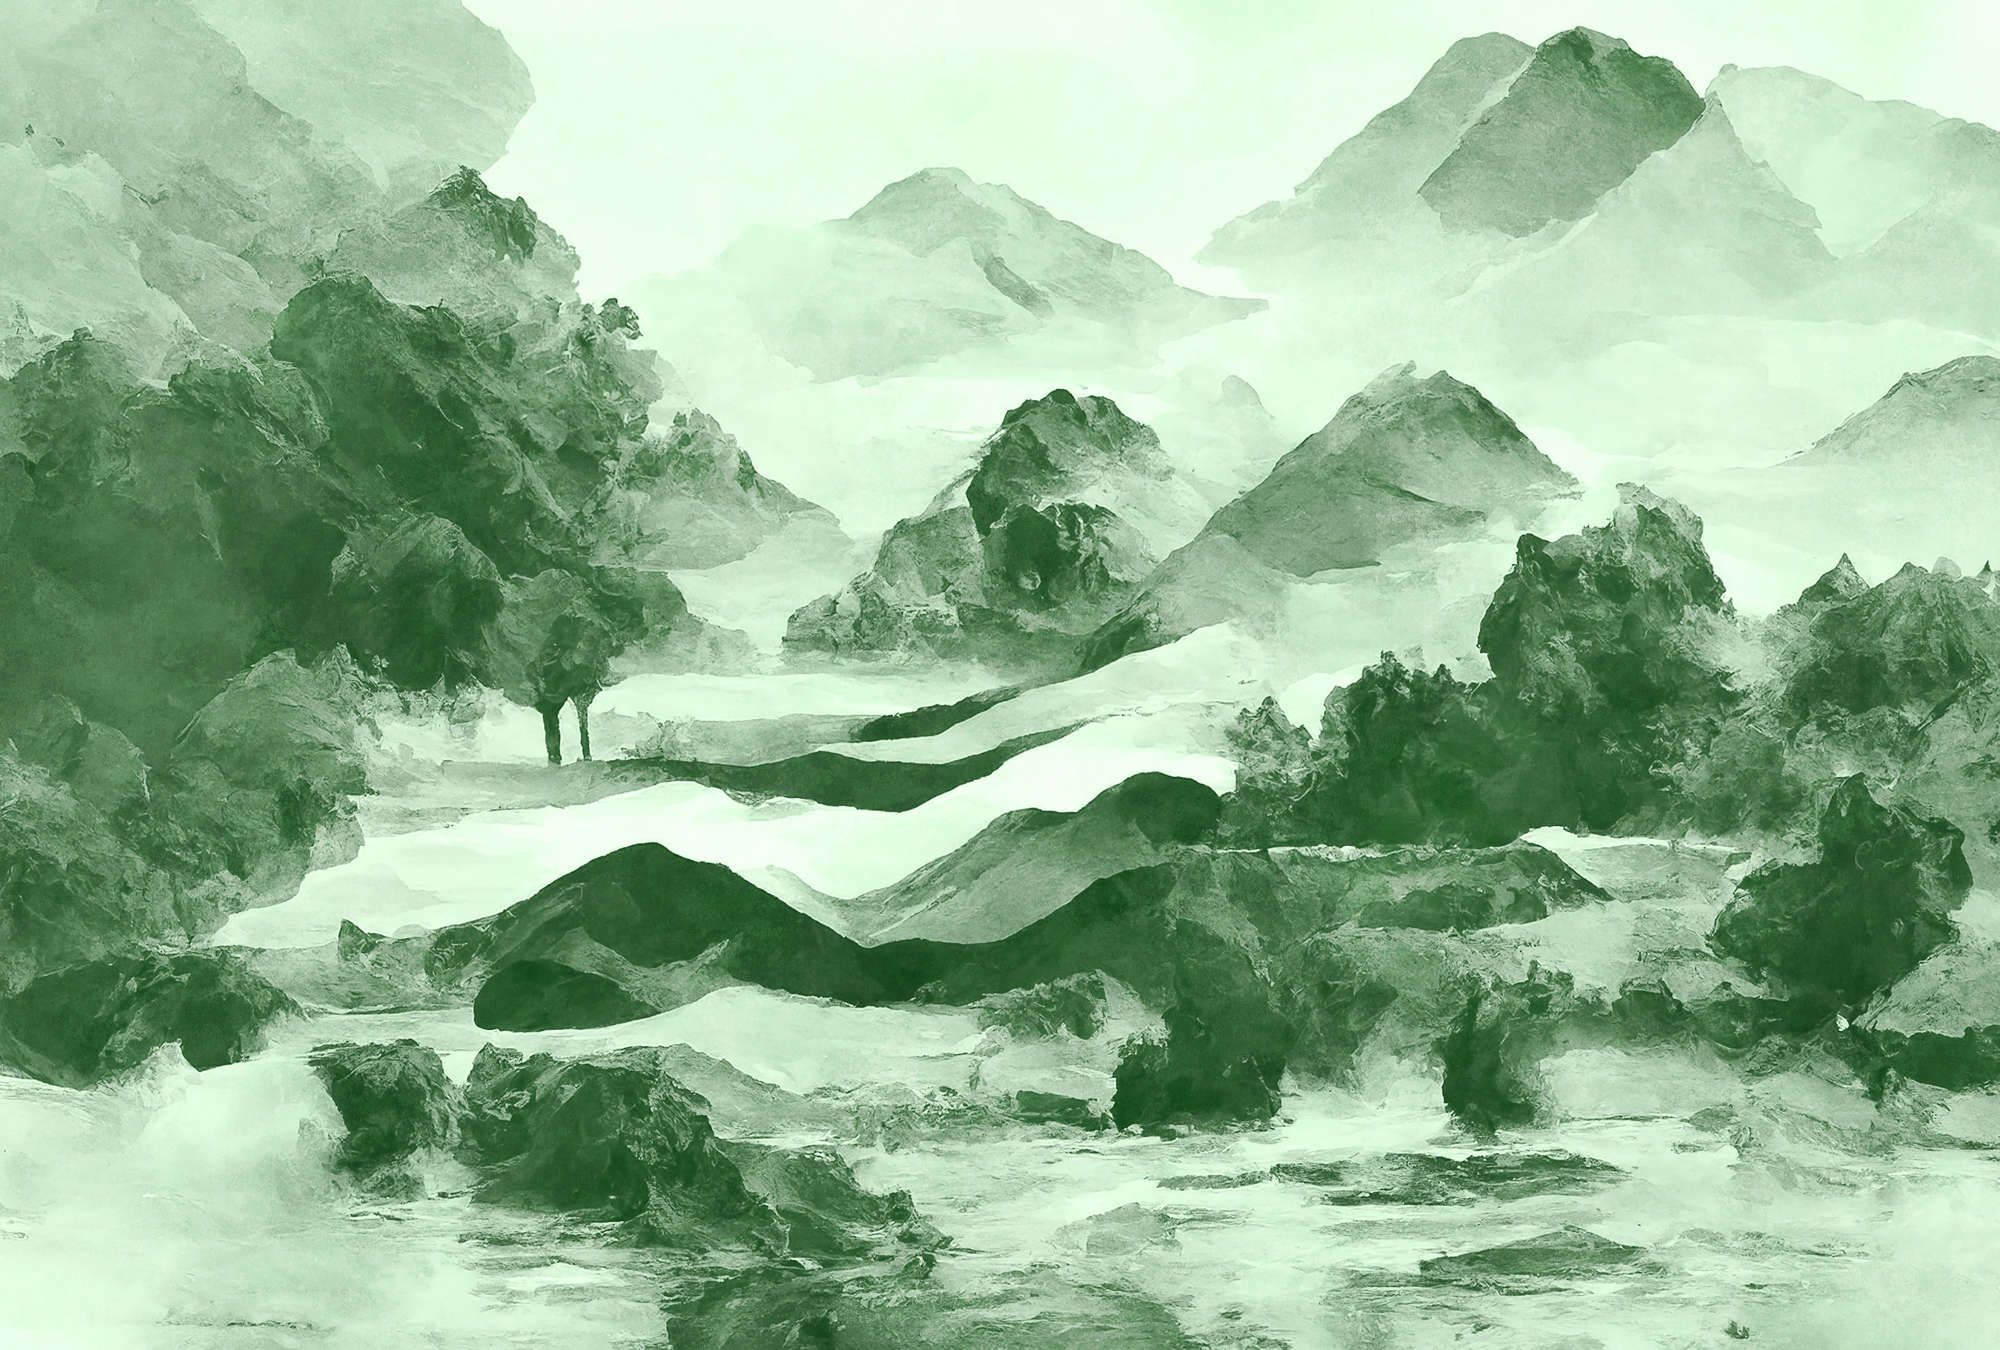             papier peint en papier panoramique »tinterra 2« - Paysage avec montagnes & brouillard - Vert | Intissé légèrement structuré
        